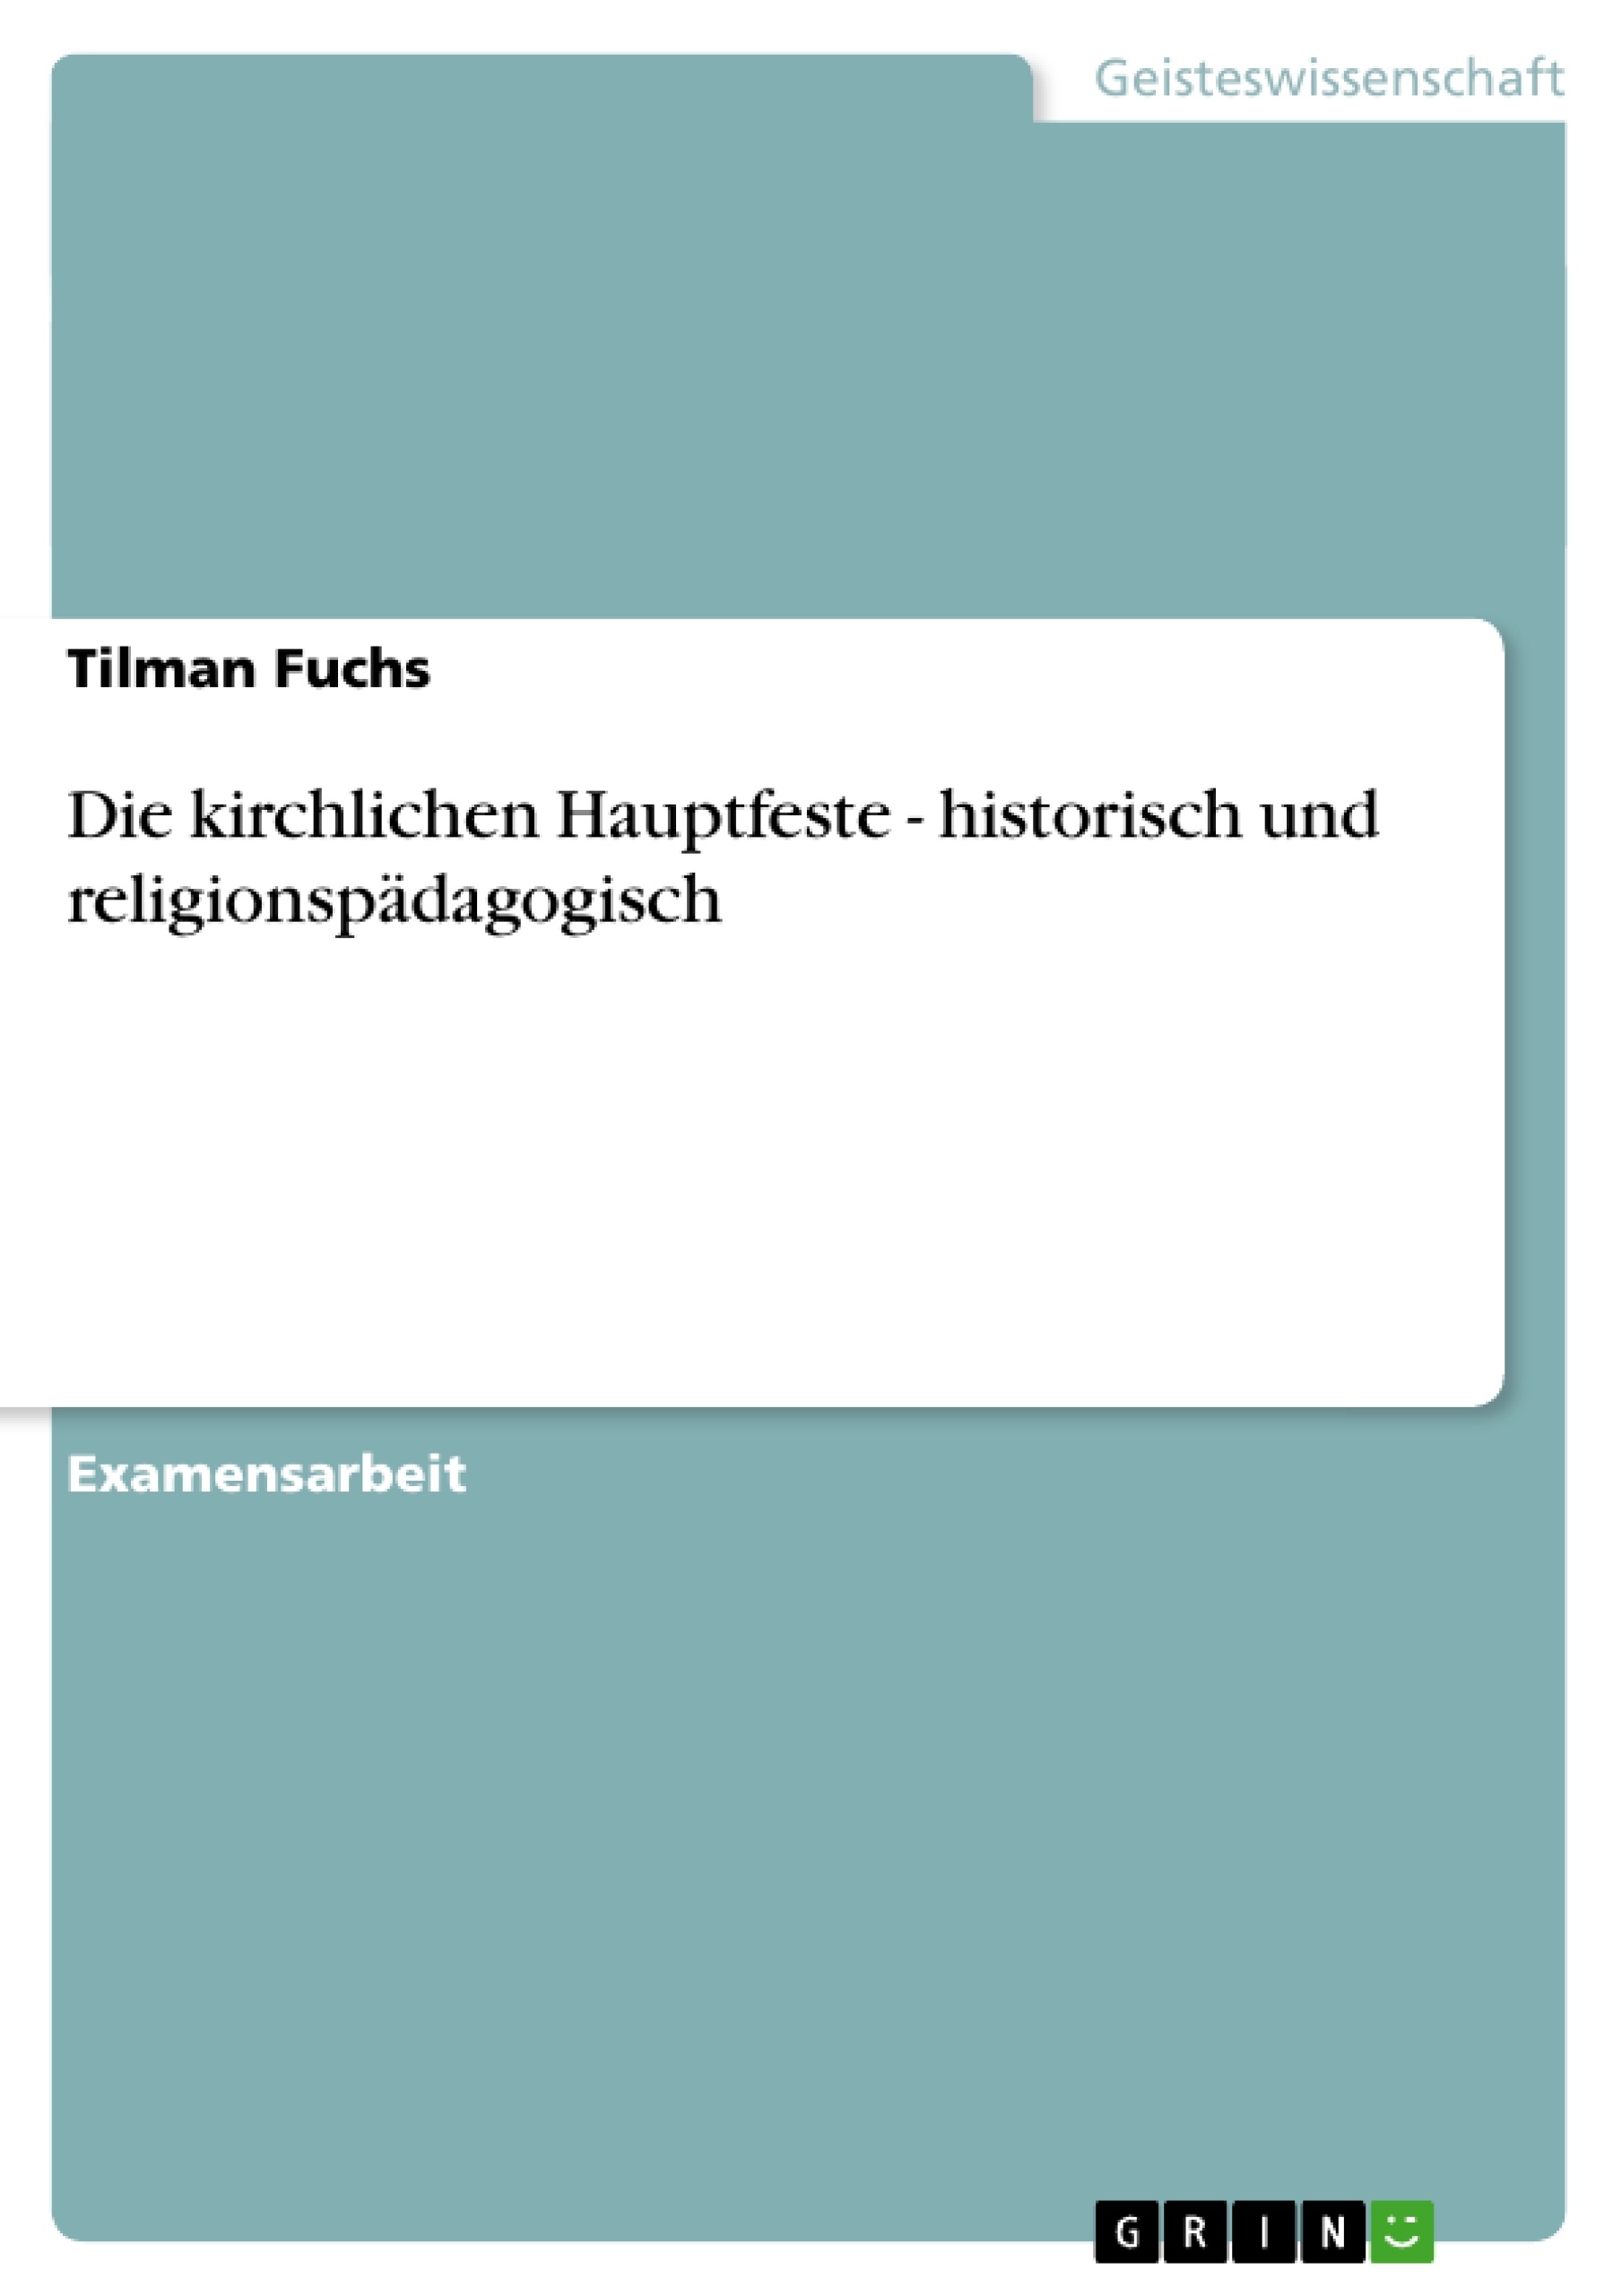 Titre: Die kirchlichen Hauptfeste - historisch und religionspädagogisch